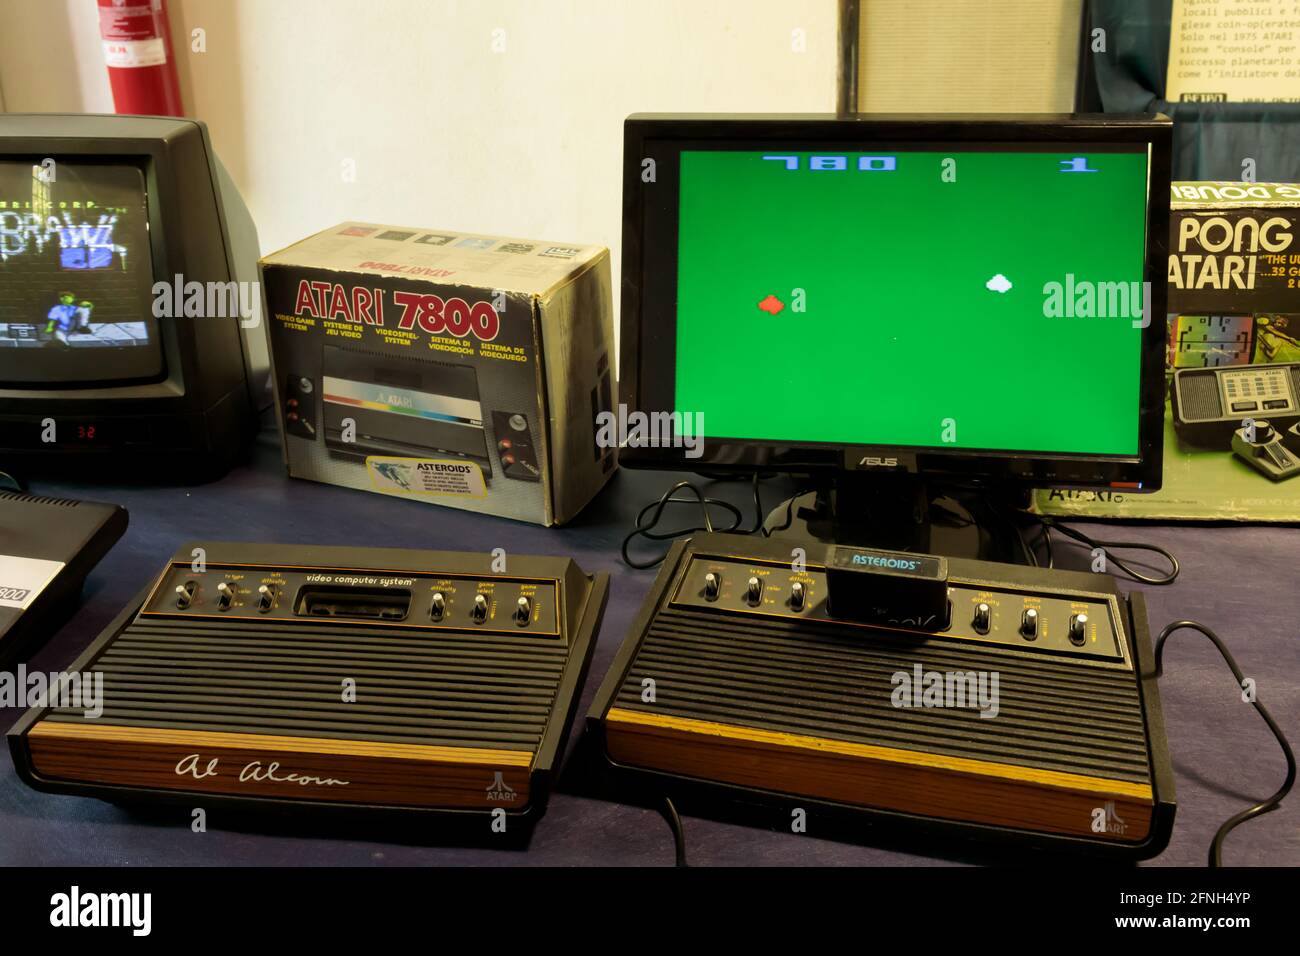 ROM, ITALIEN - 27. APRIL 2019: Pong, ein Arcade-Videospiel im Tischtennis-Stil mit einfachen zweidimensionalen Grafiken, hergestellt von Atari und orig Stockfoto